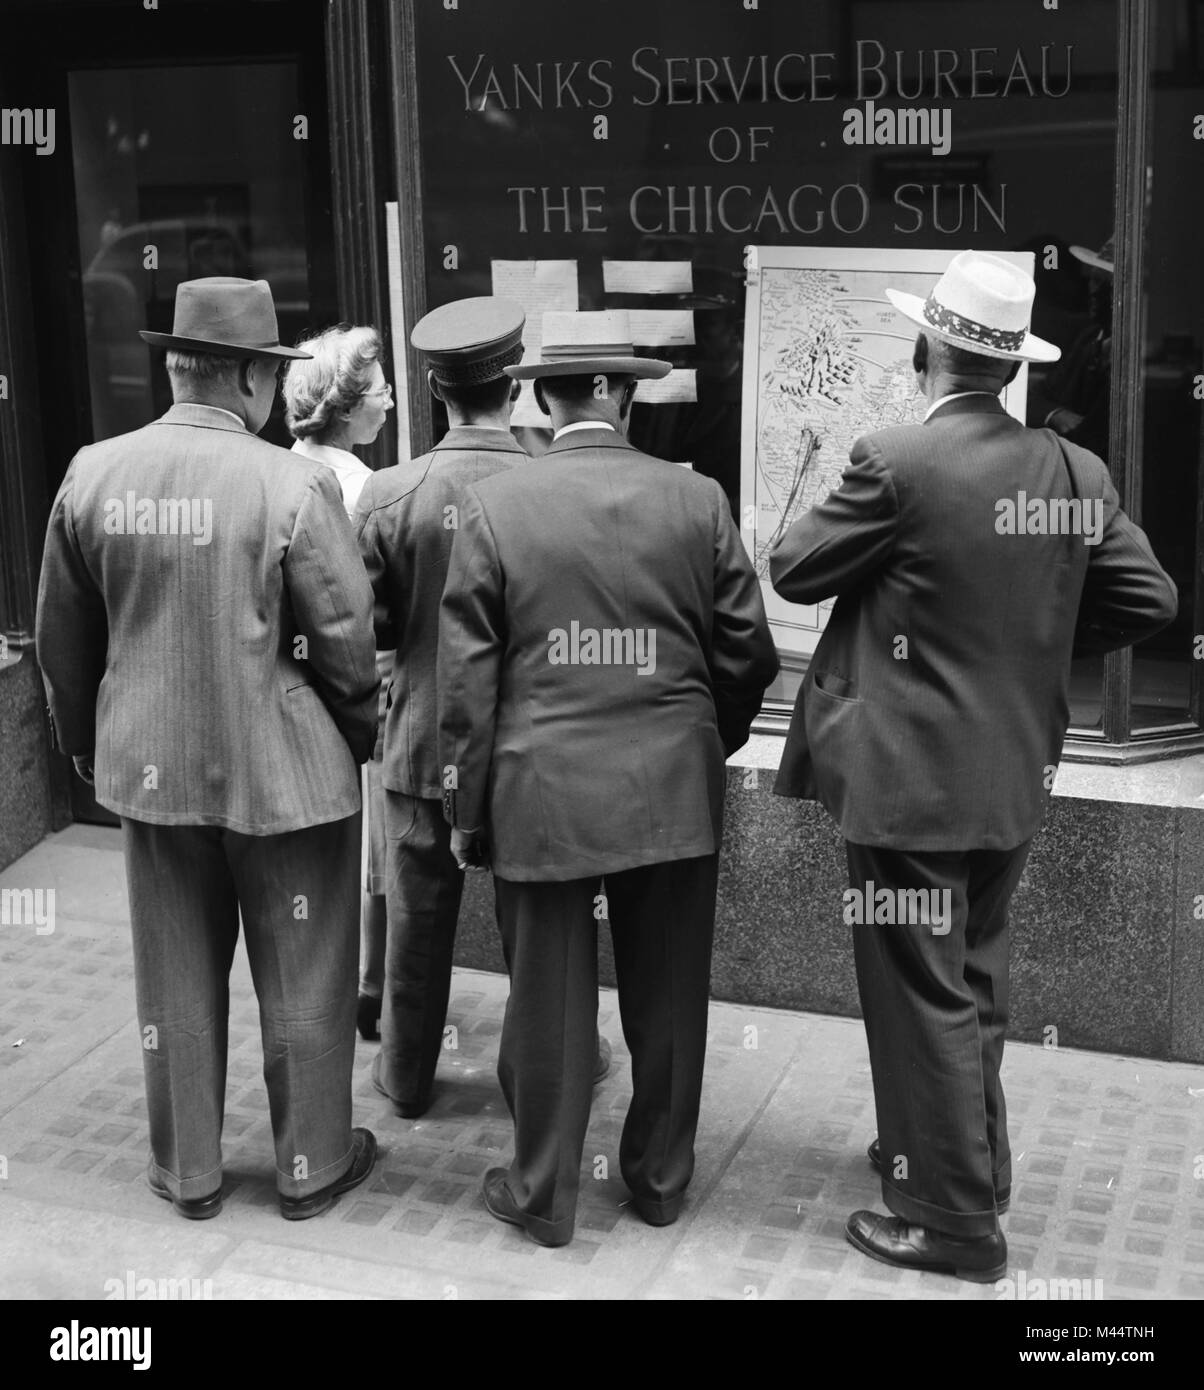 Una multitud se reúne en frente de una actualización de las noticias de la Segunda Guerra Mundial en el Yanks Service Bureau ventana del Chicago Sun, ca. 1944. Foto de stock